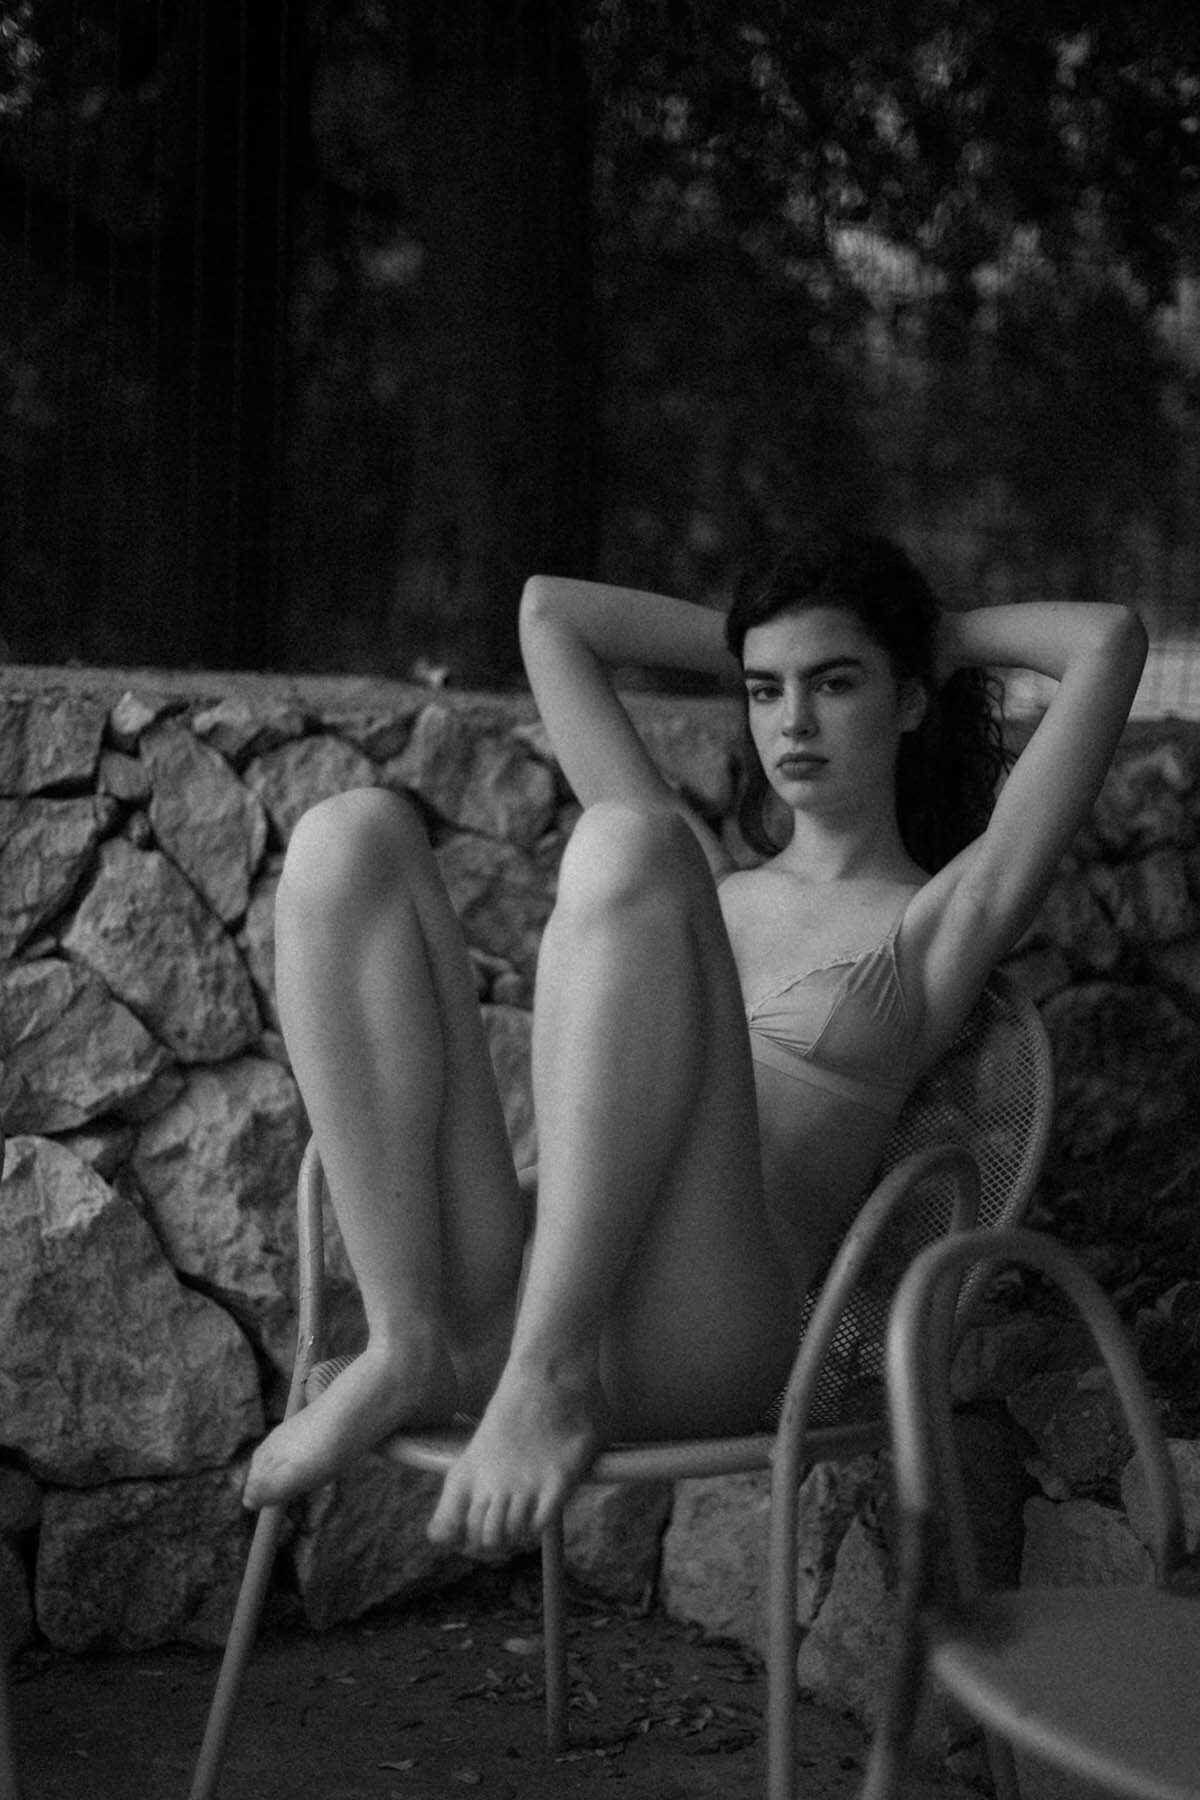 Η μουνάρα μοντέλο Arina Fishman σε γυμνές φωτογραφίες